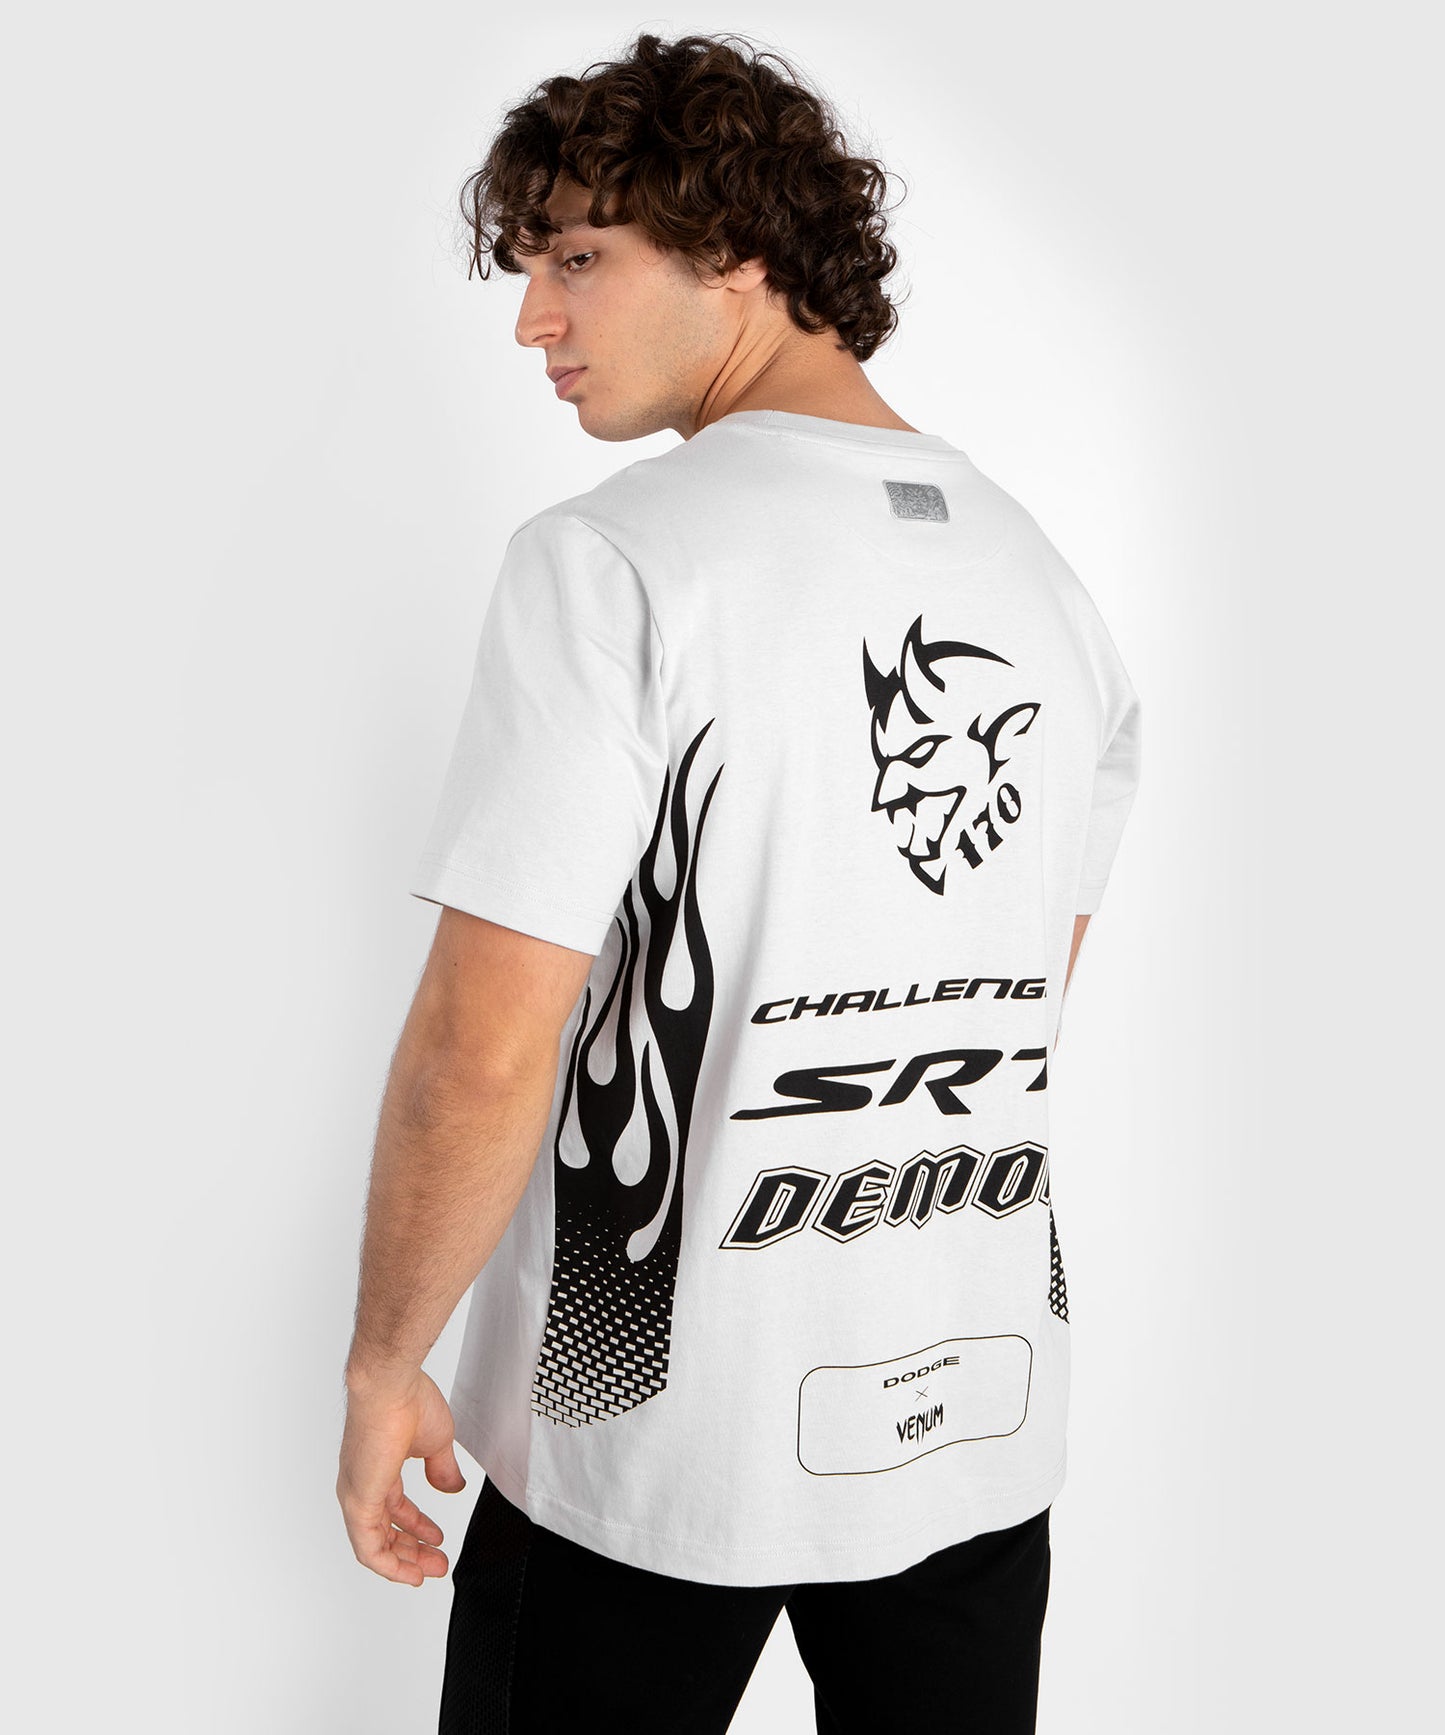 Venum x Dodge Demon 170  T-Shirt für Männer - Grau